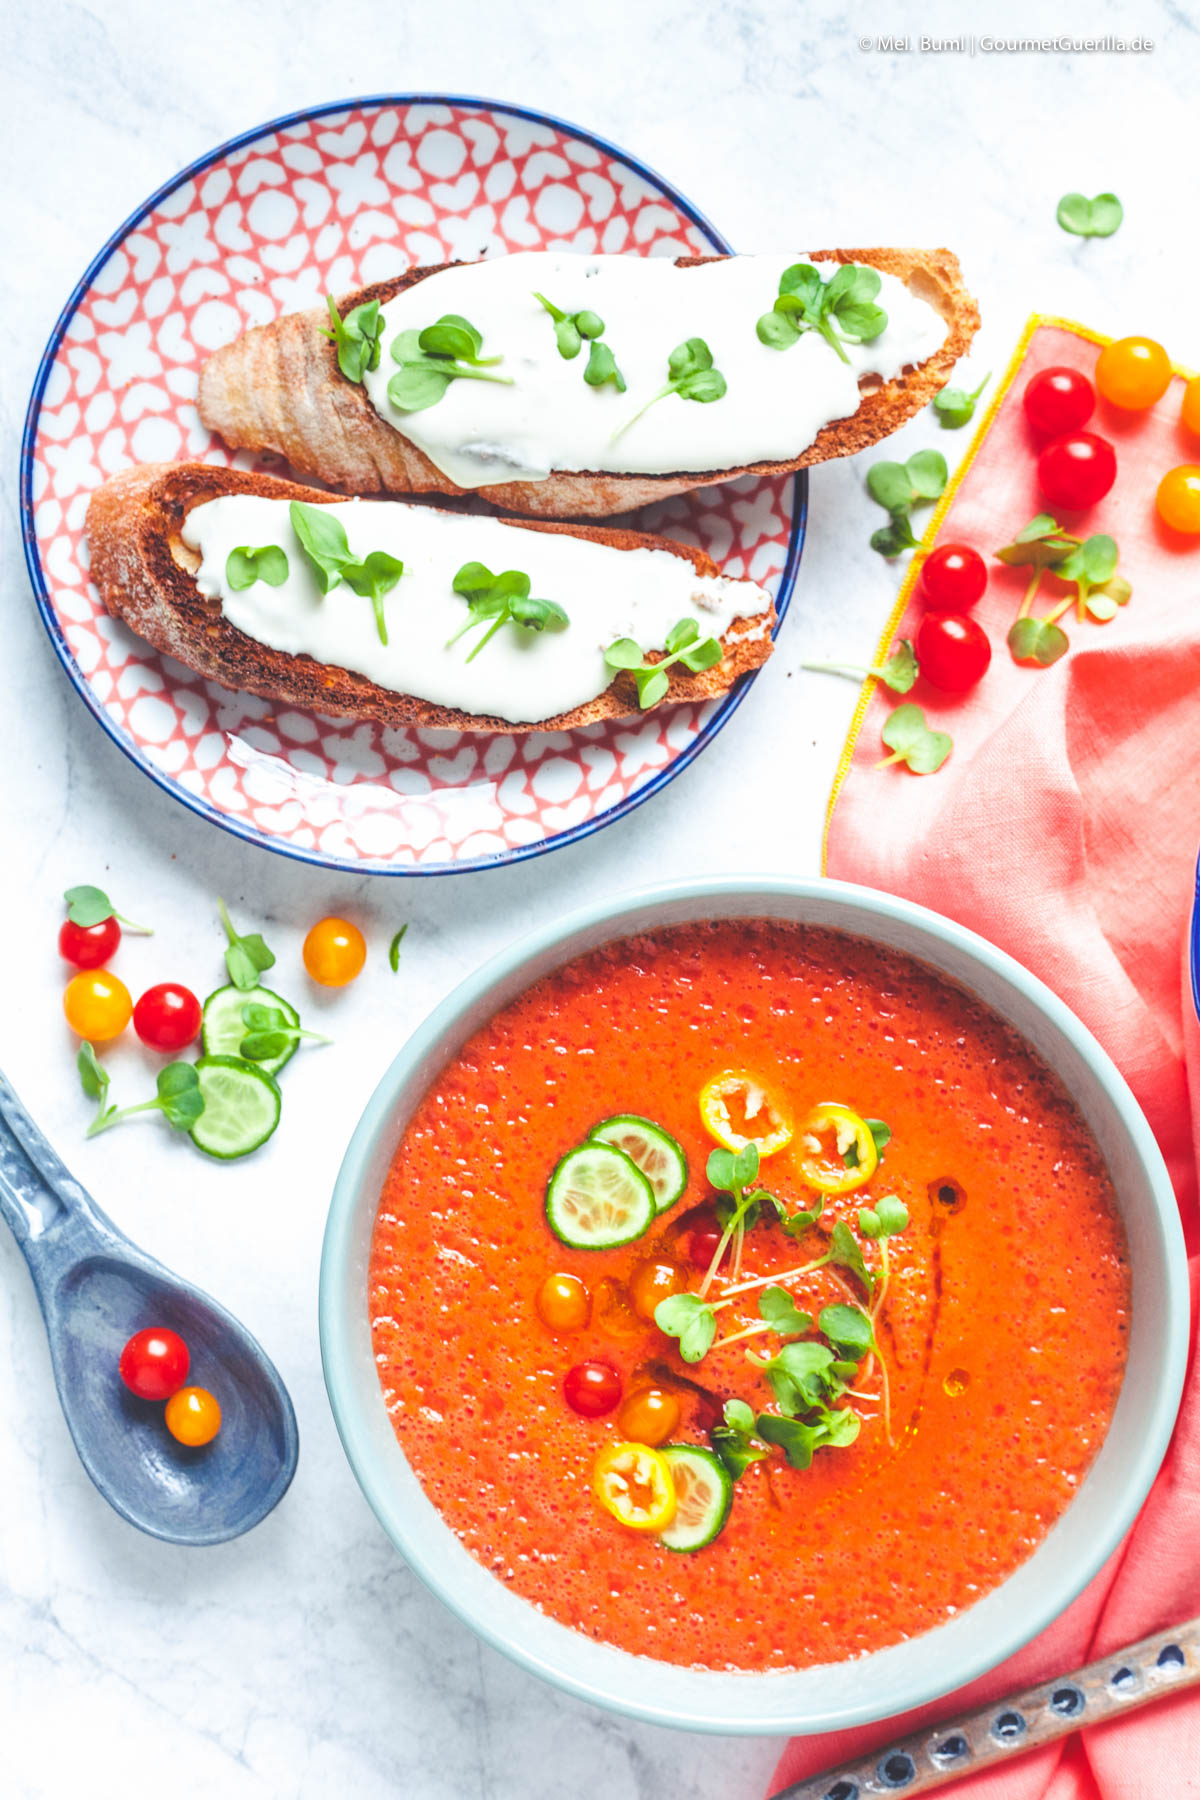 Erfrischendes Melonen-Tomaten-Süppchen mit Ziegenkäse-Crostini | GourmetGuerilla.de